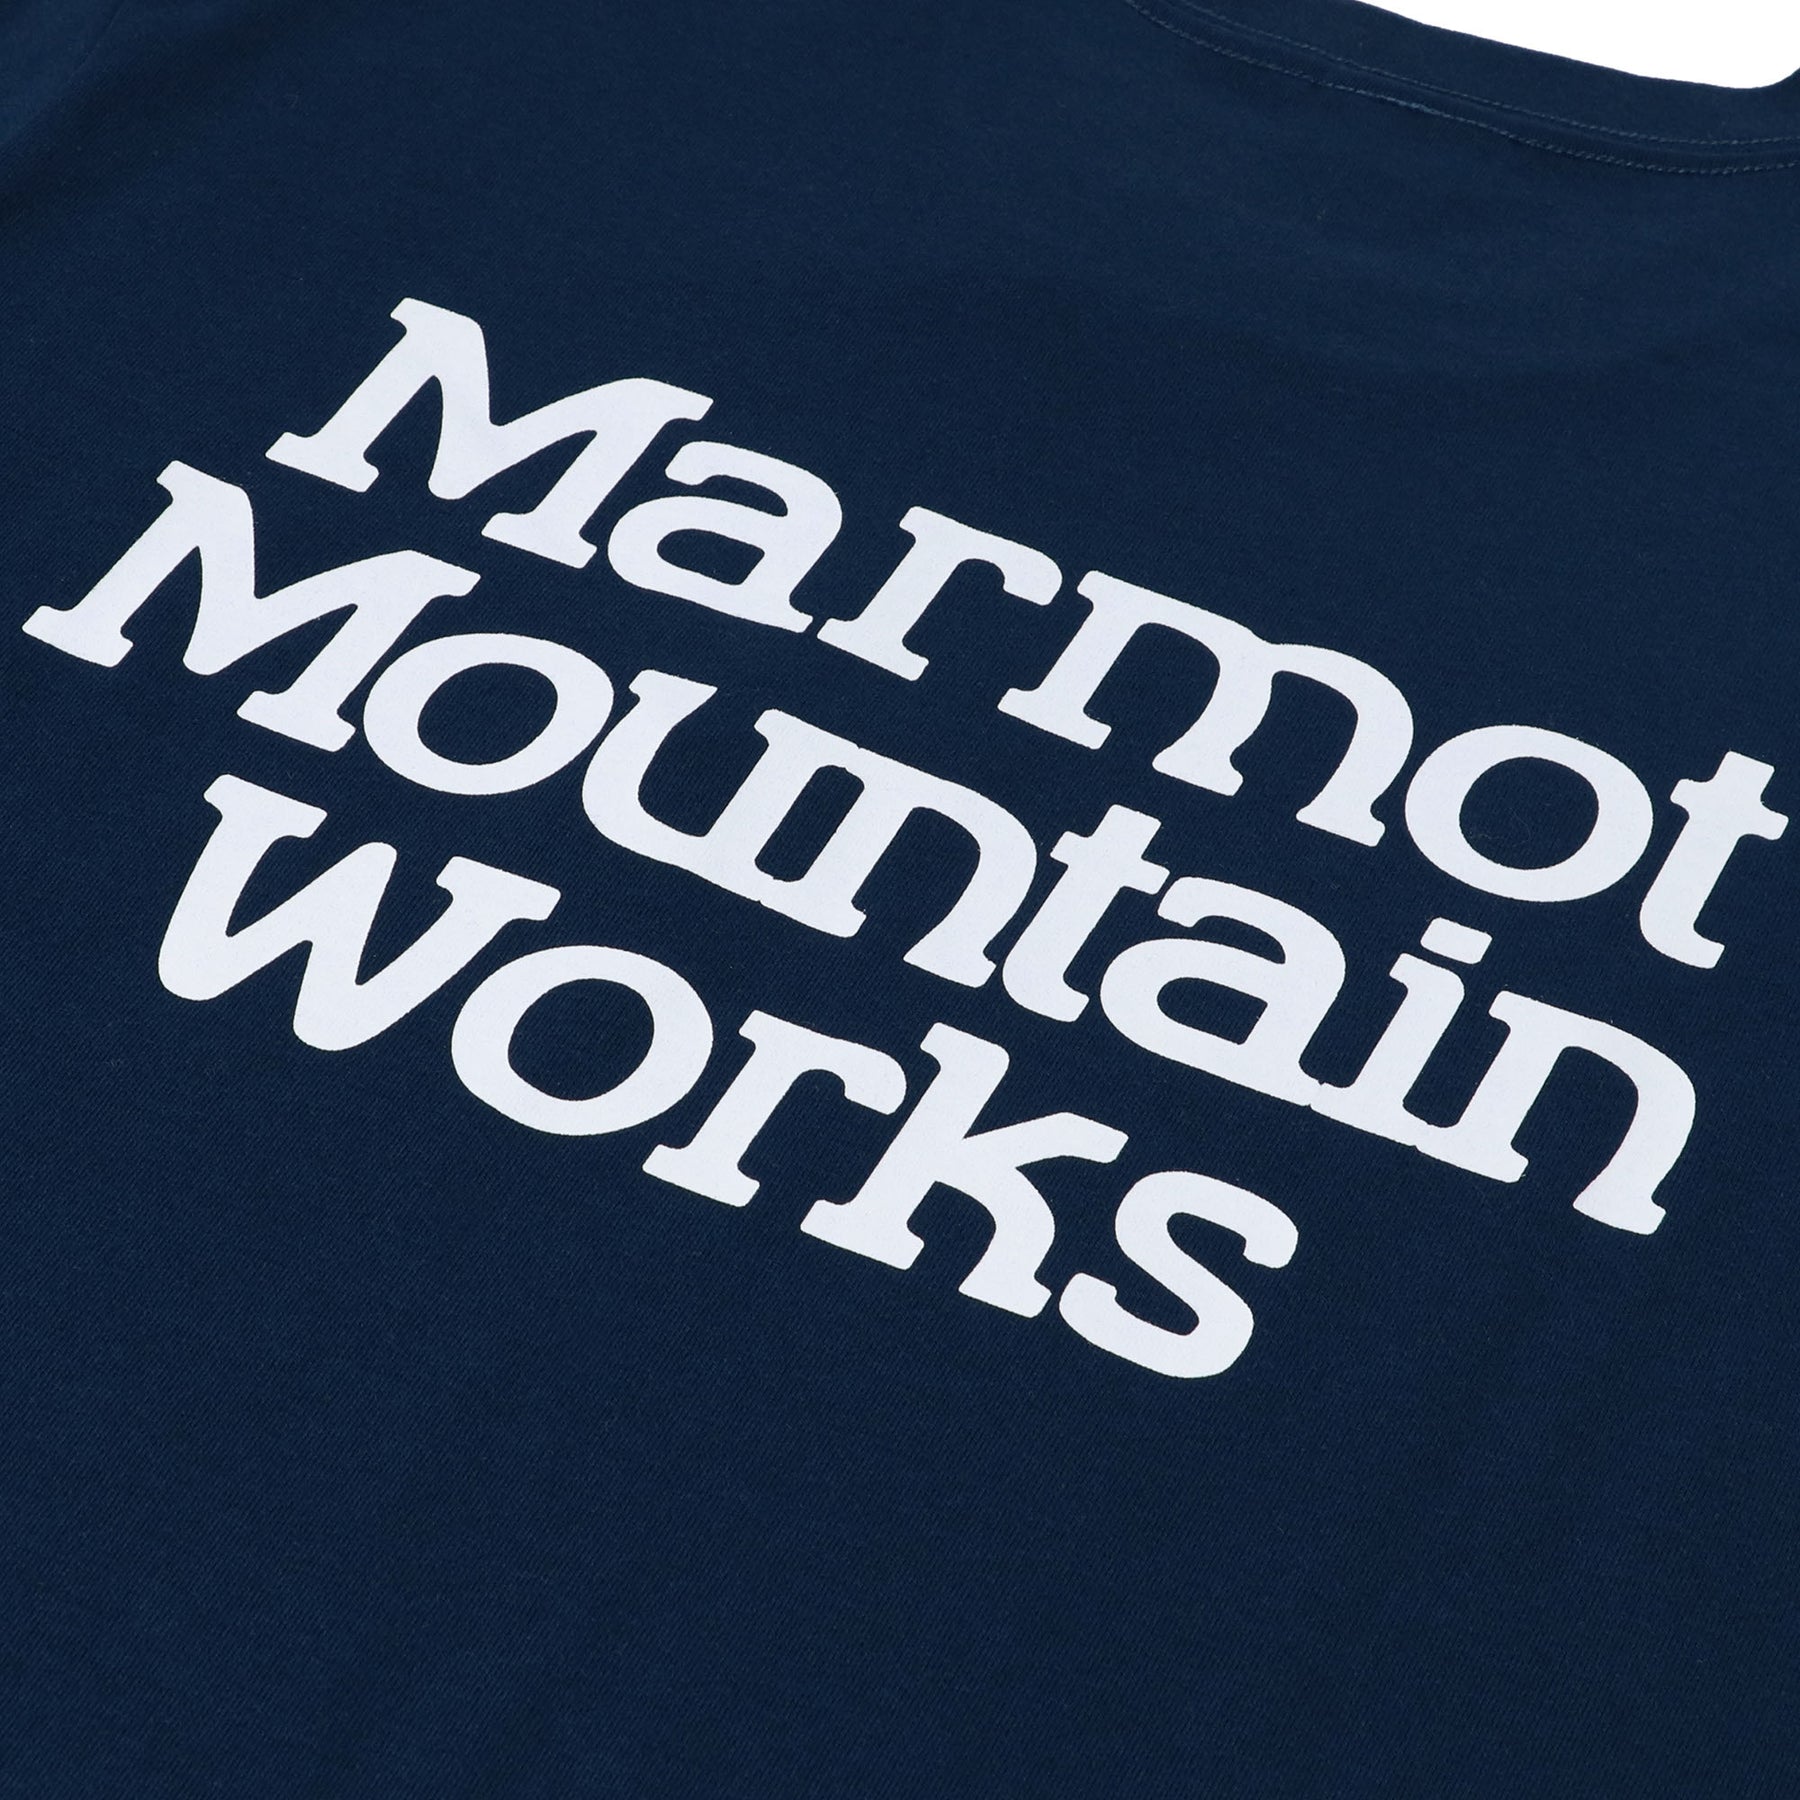 Marmots-T(マーモッツ Tシャツ)